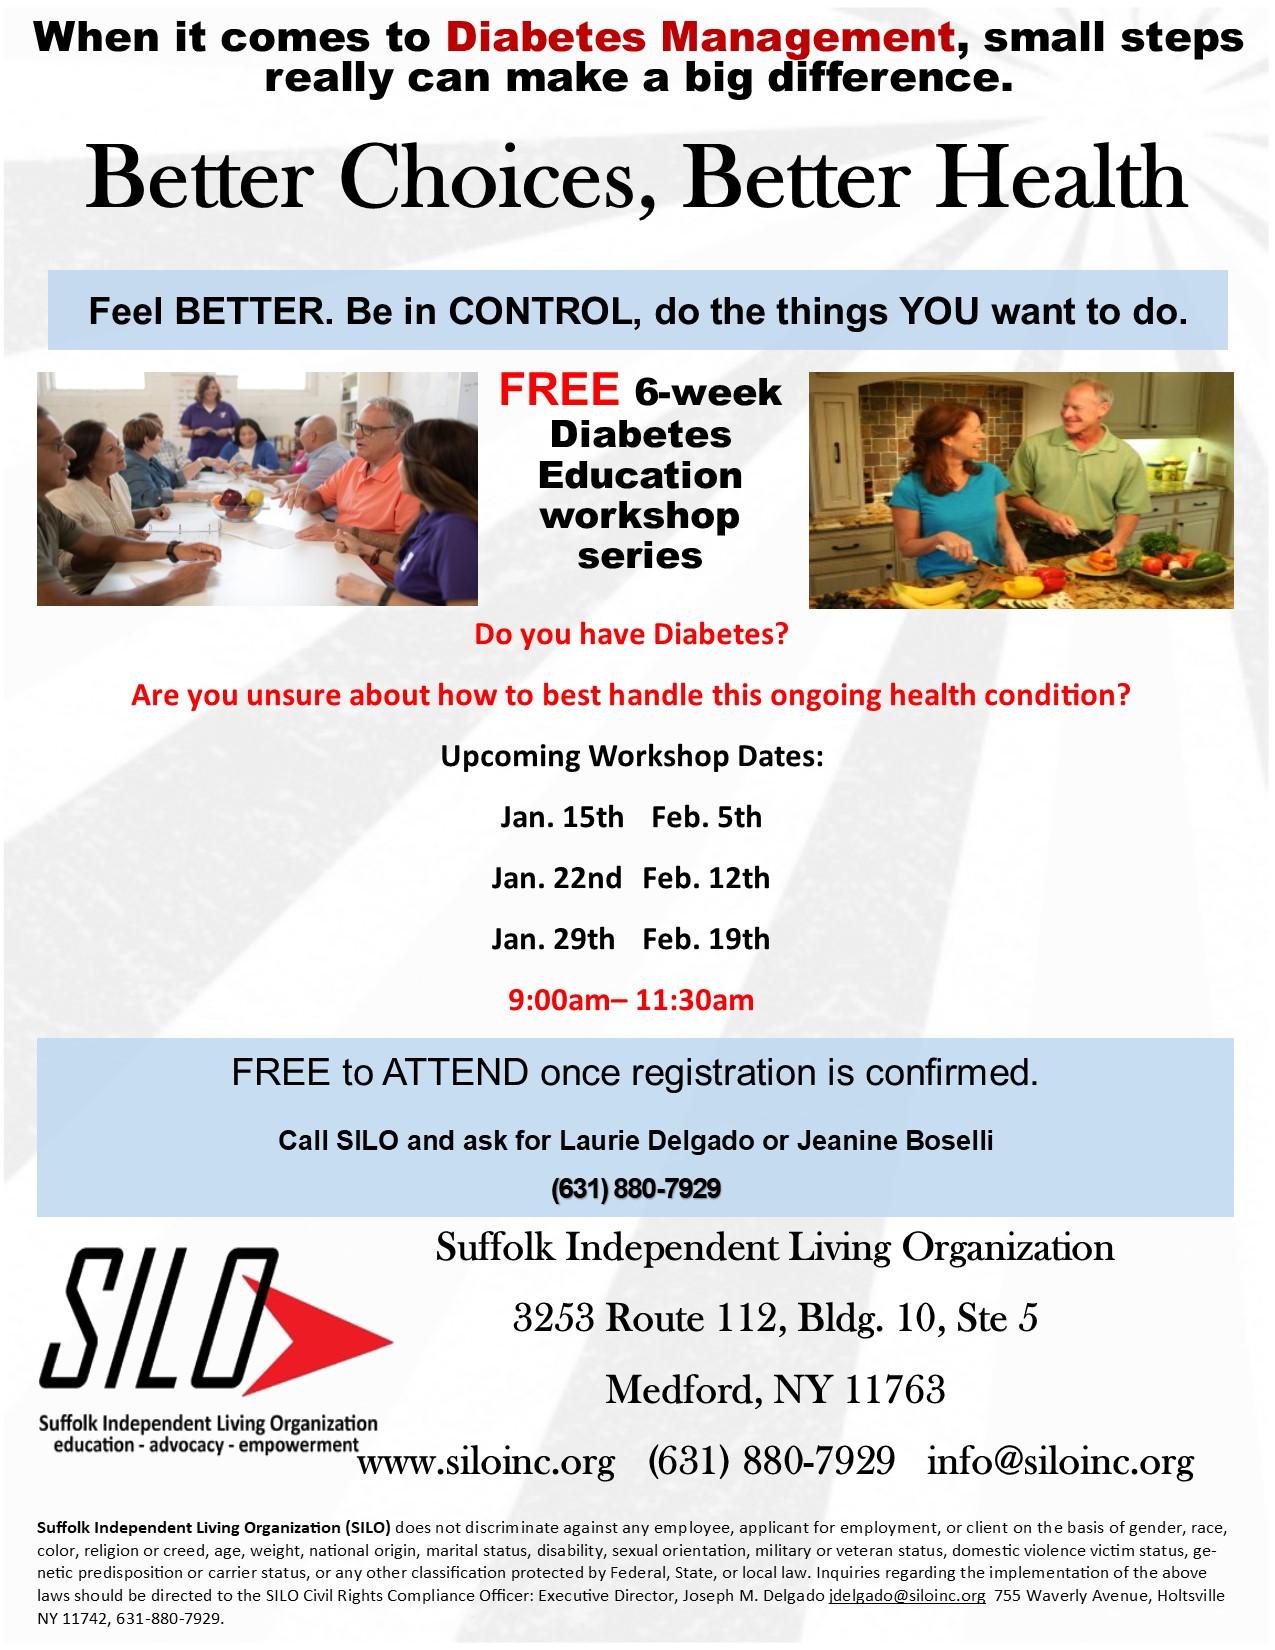 FREE 6 Week Diabetes Education Workshop Series